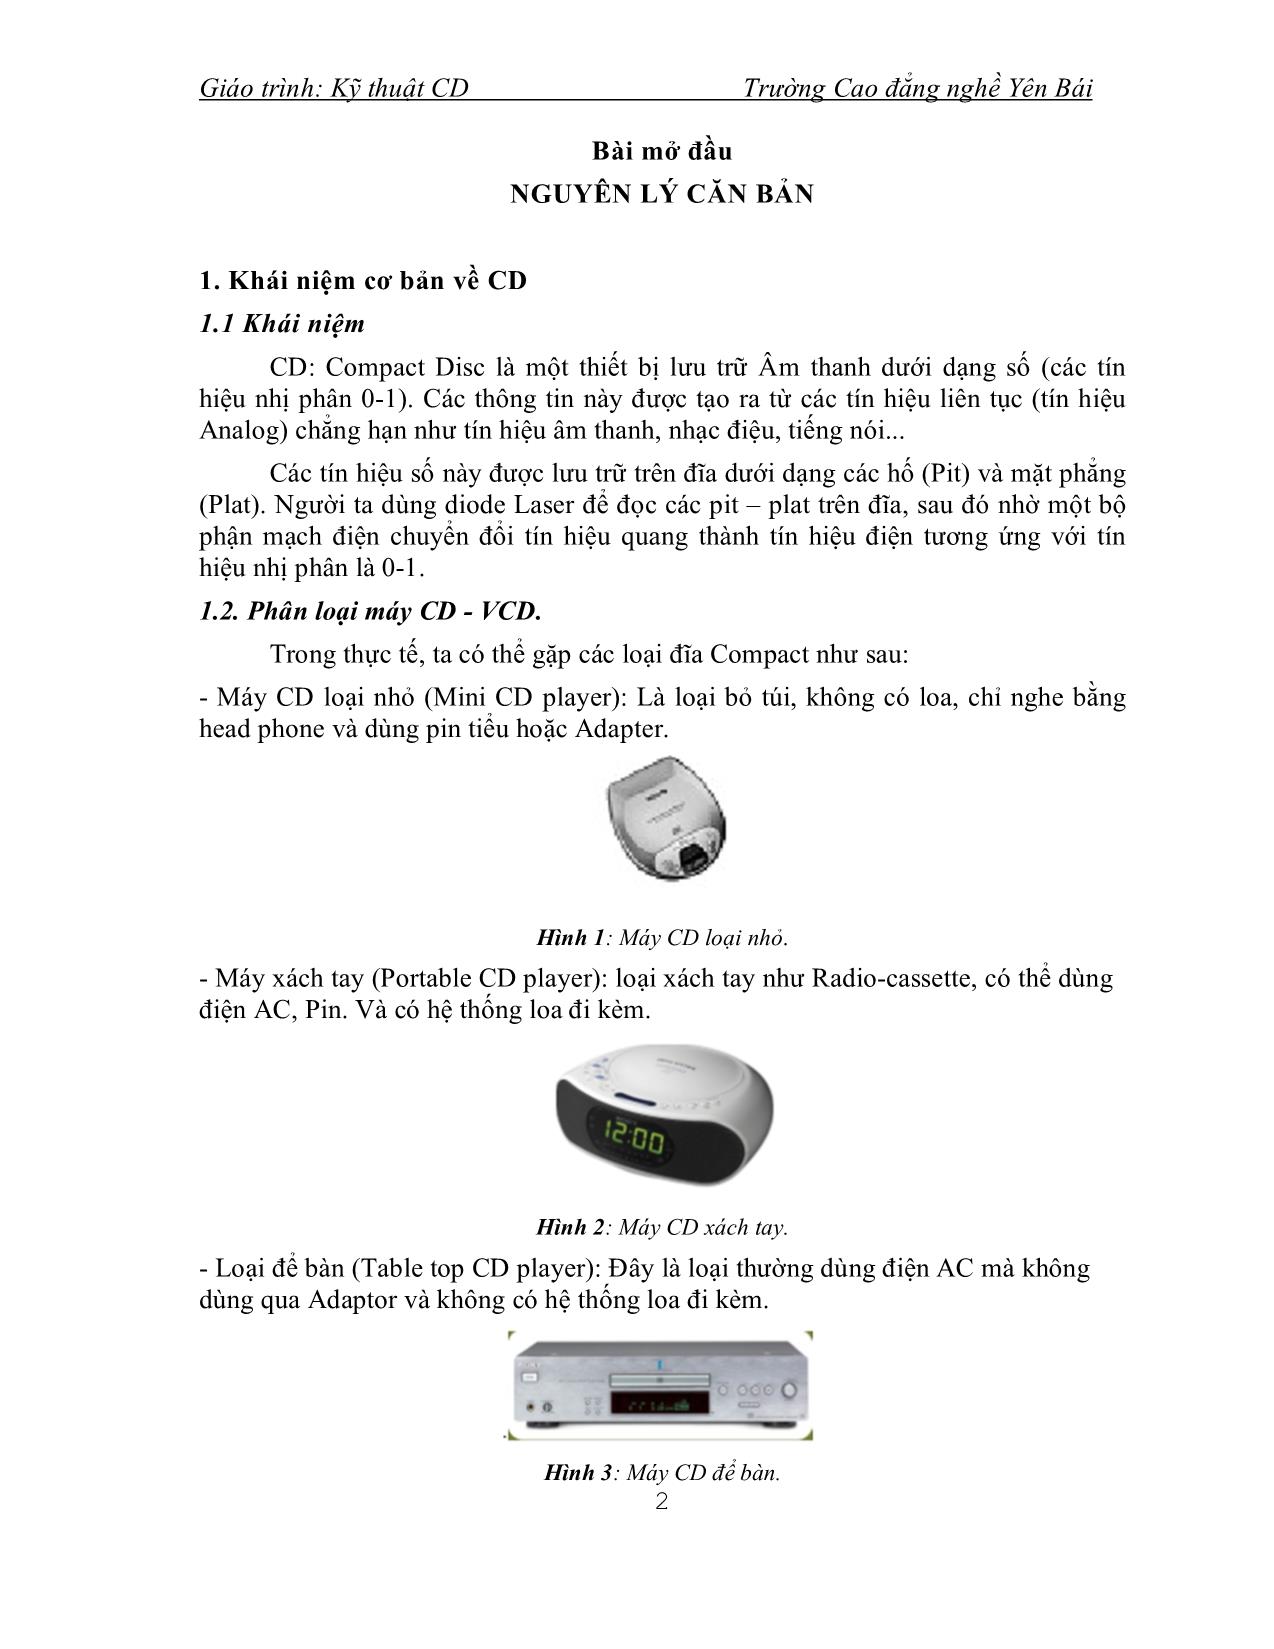 Giáo trình Kỹ thuật CD (Phần 1) trang 3